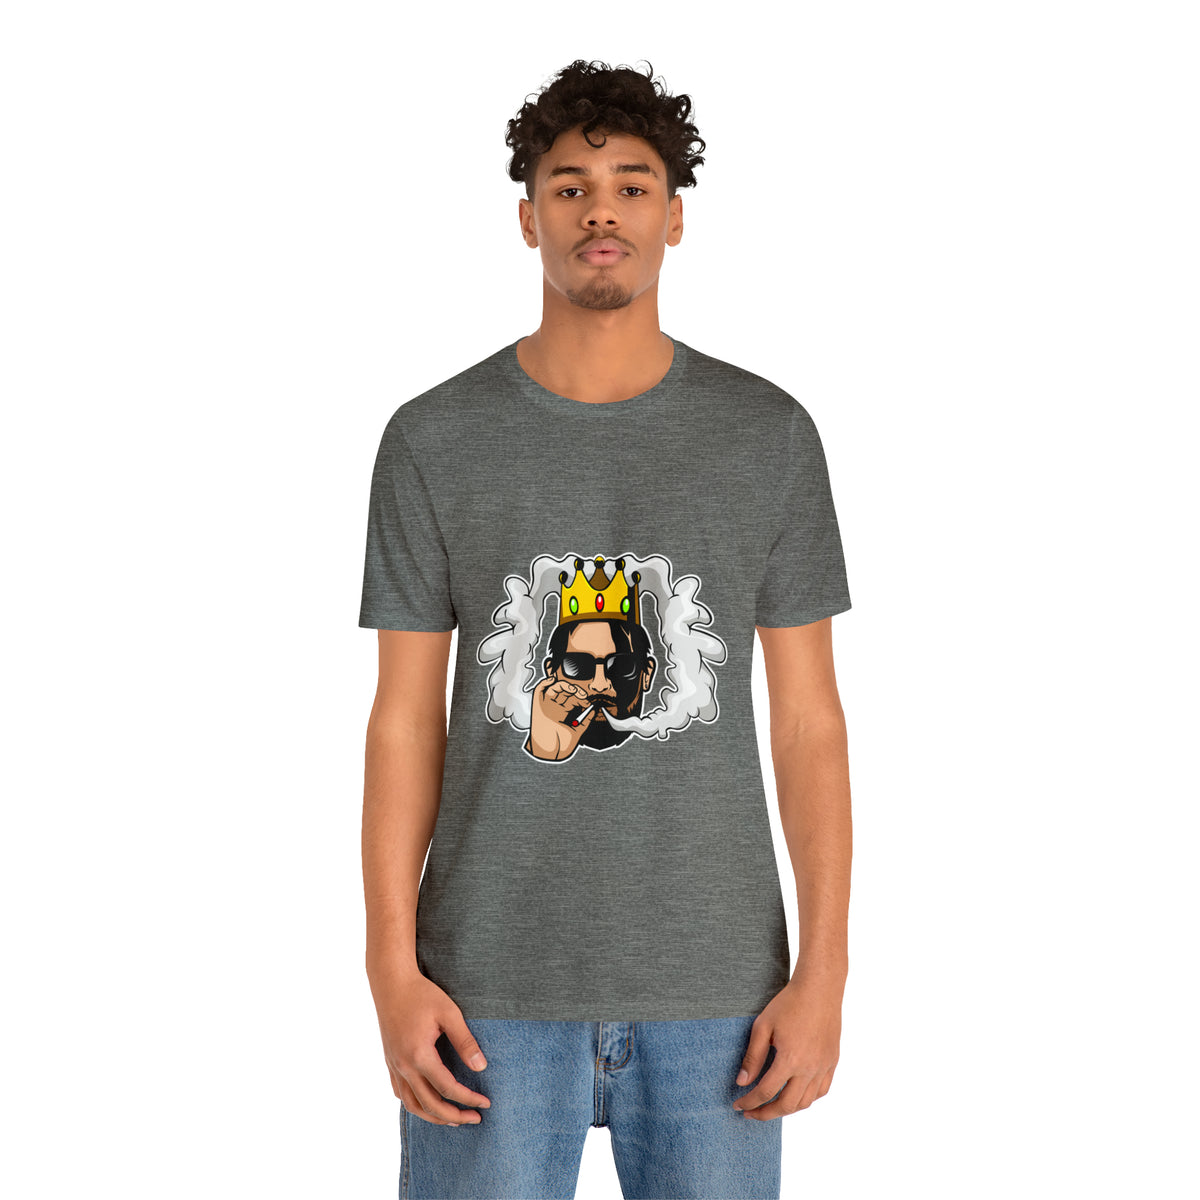 Smoking Man Crown T Shirt Design